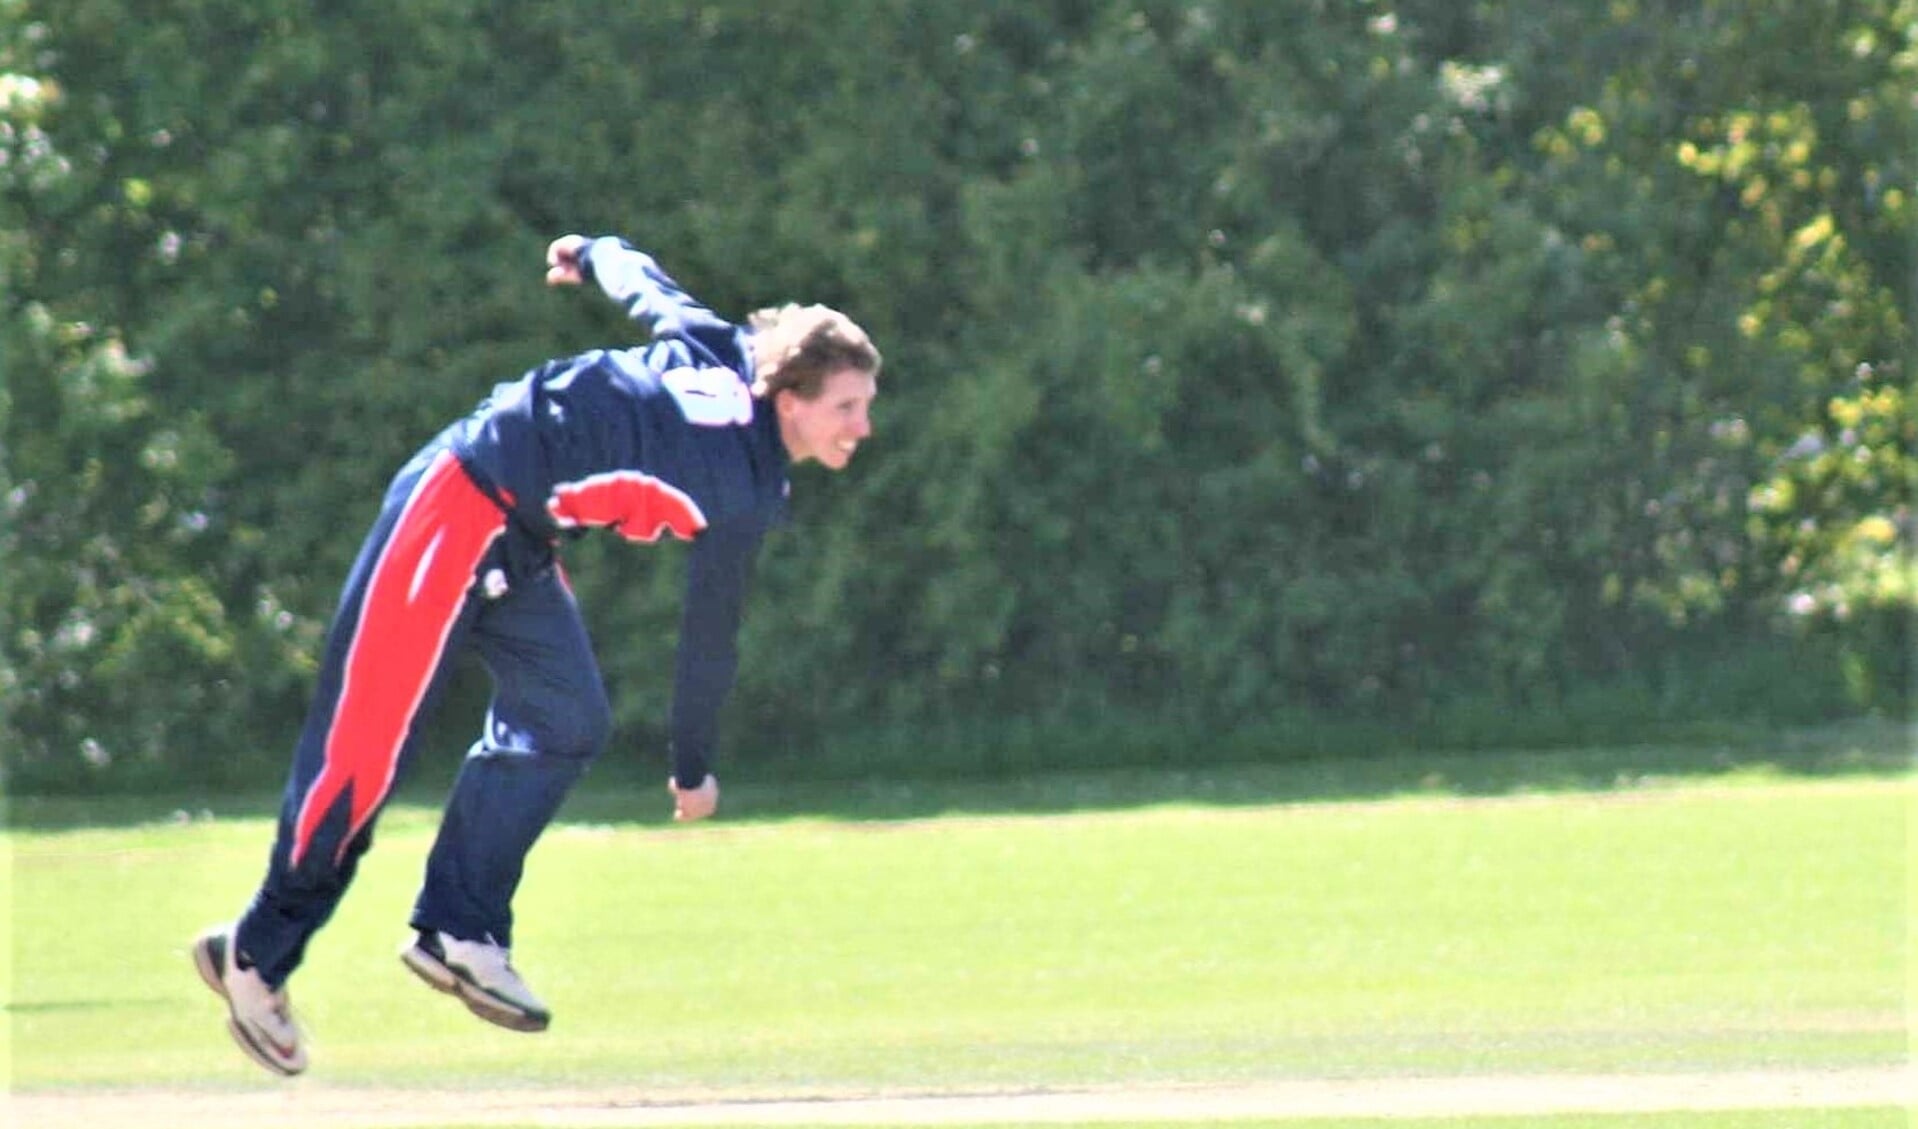 Steffen Mulder was goed voor vier wickets in het belangrijke duel tegen Punjab (foto: Catch of the Day BV).